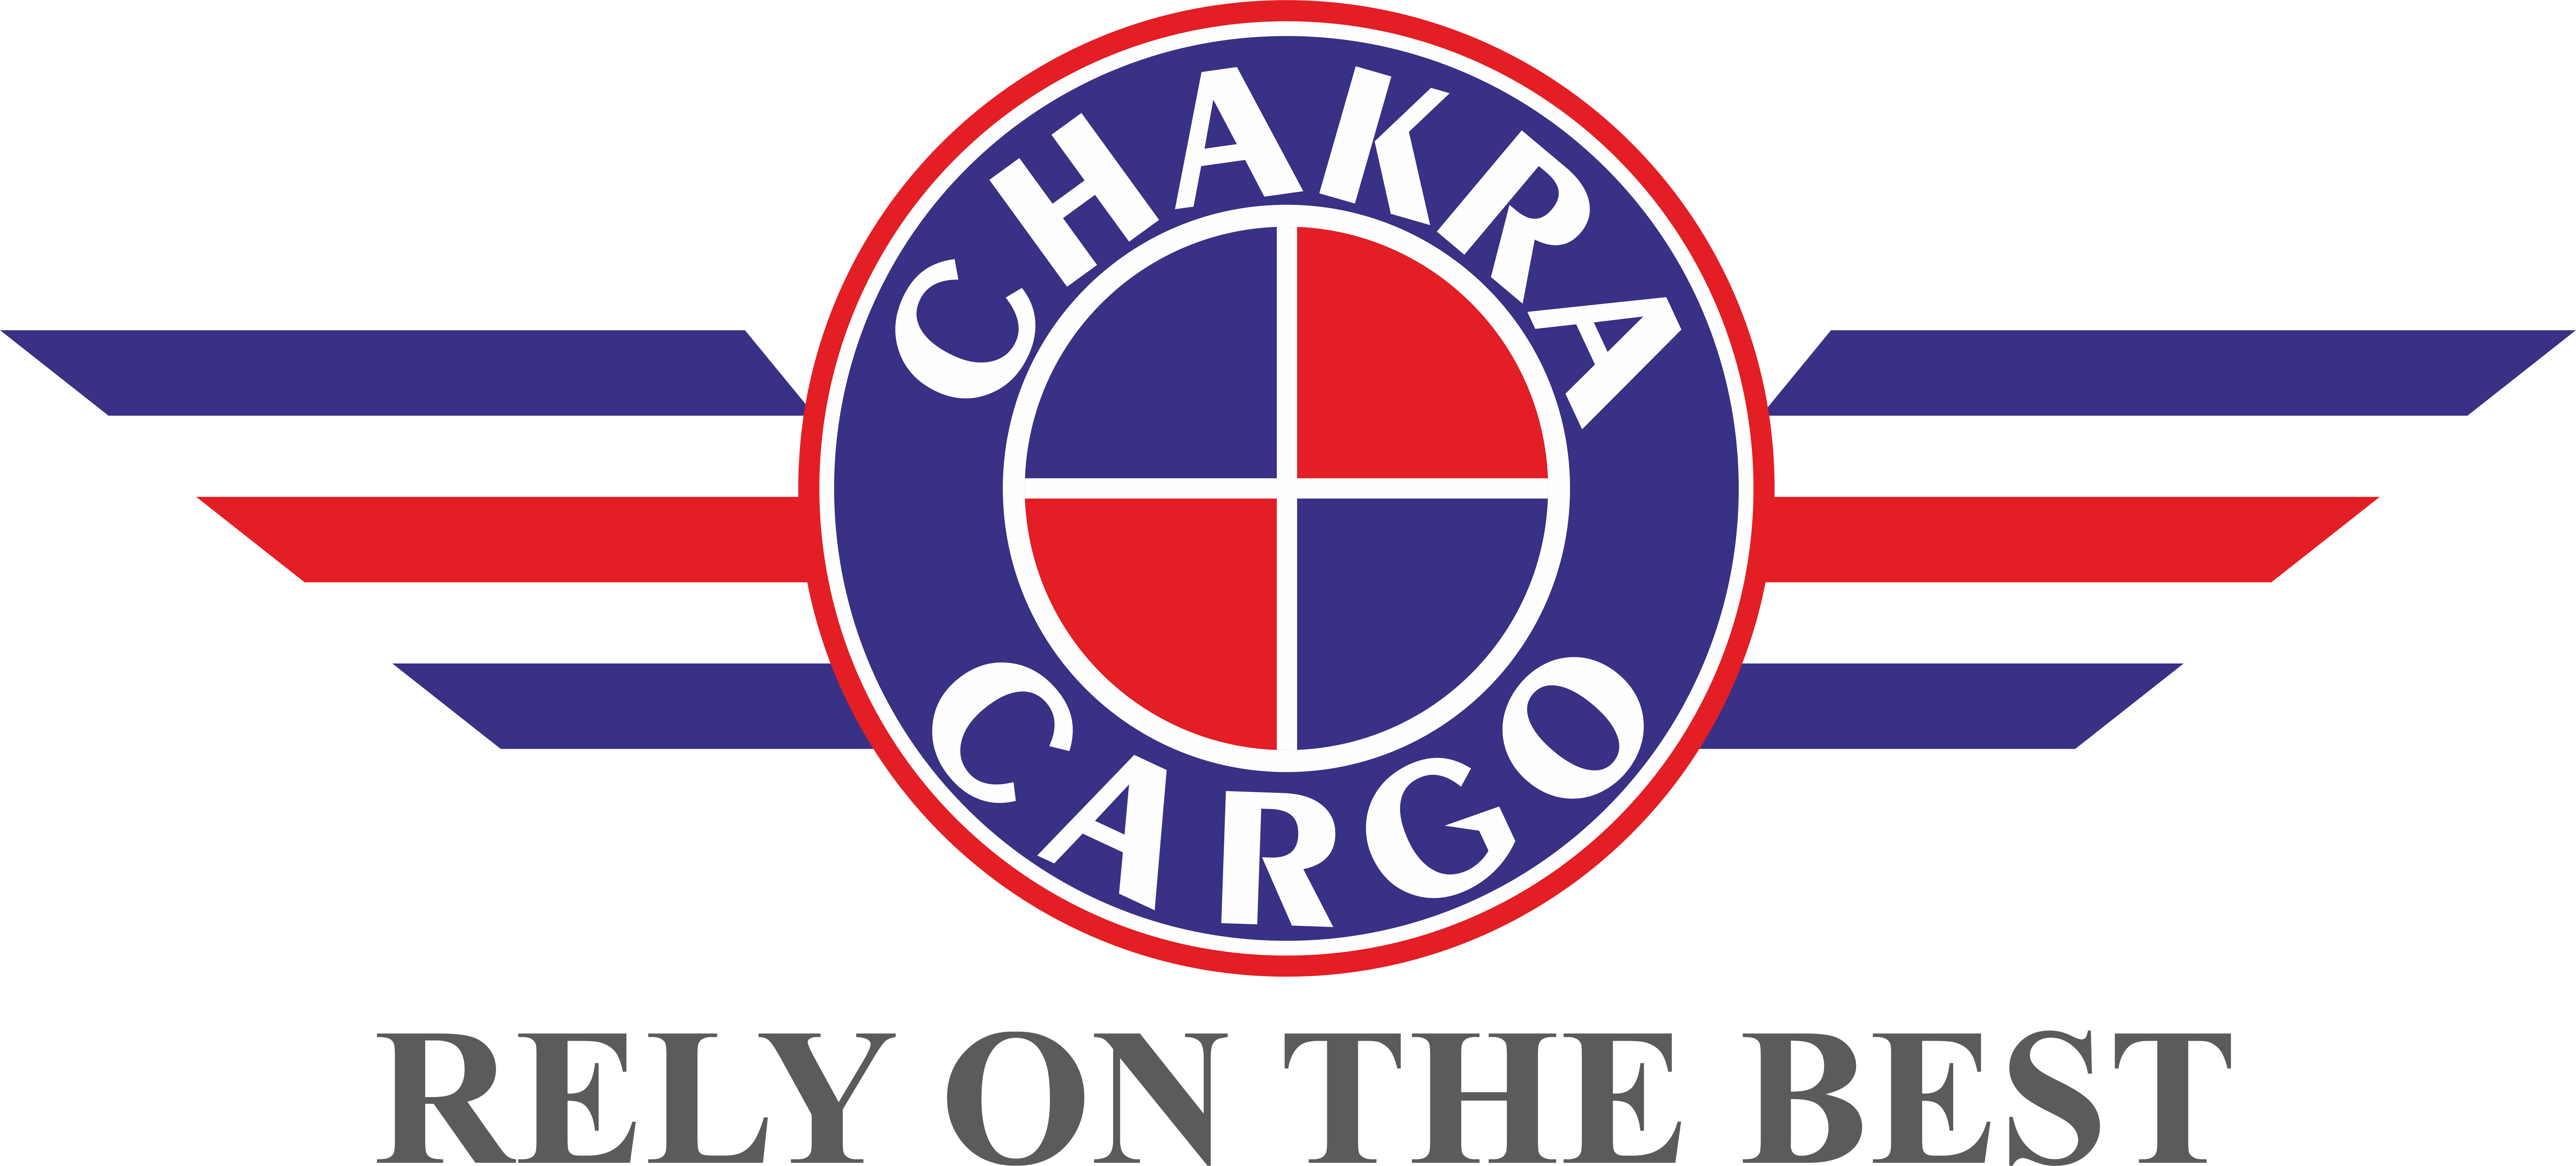 Chakra Cargo